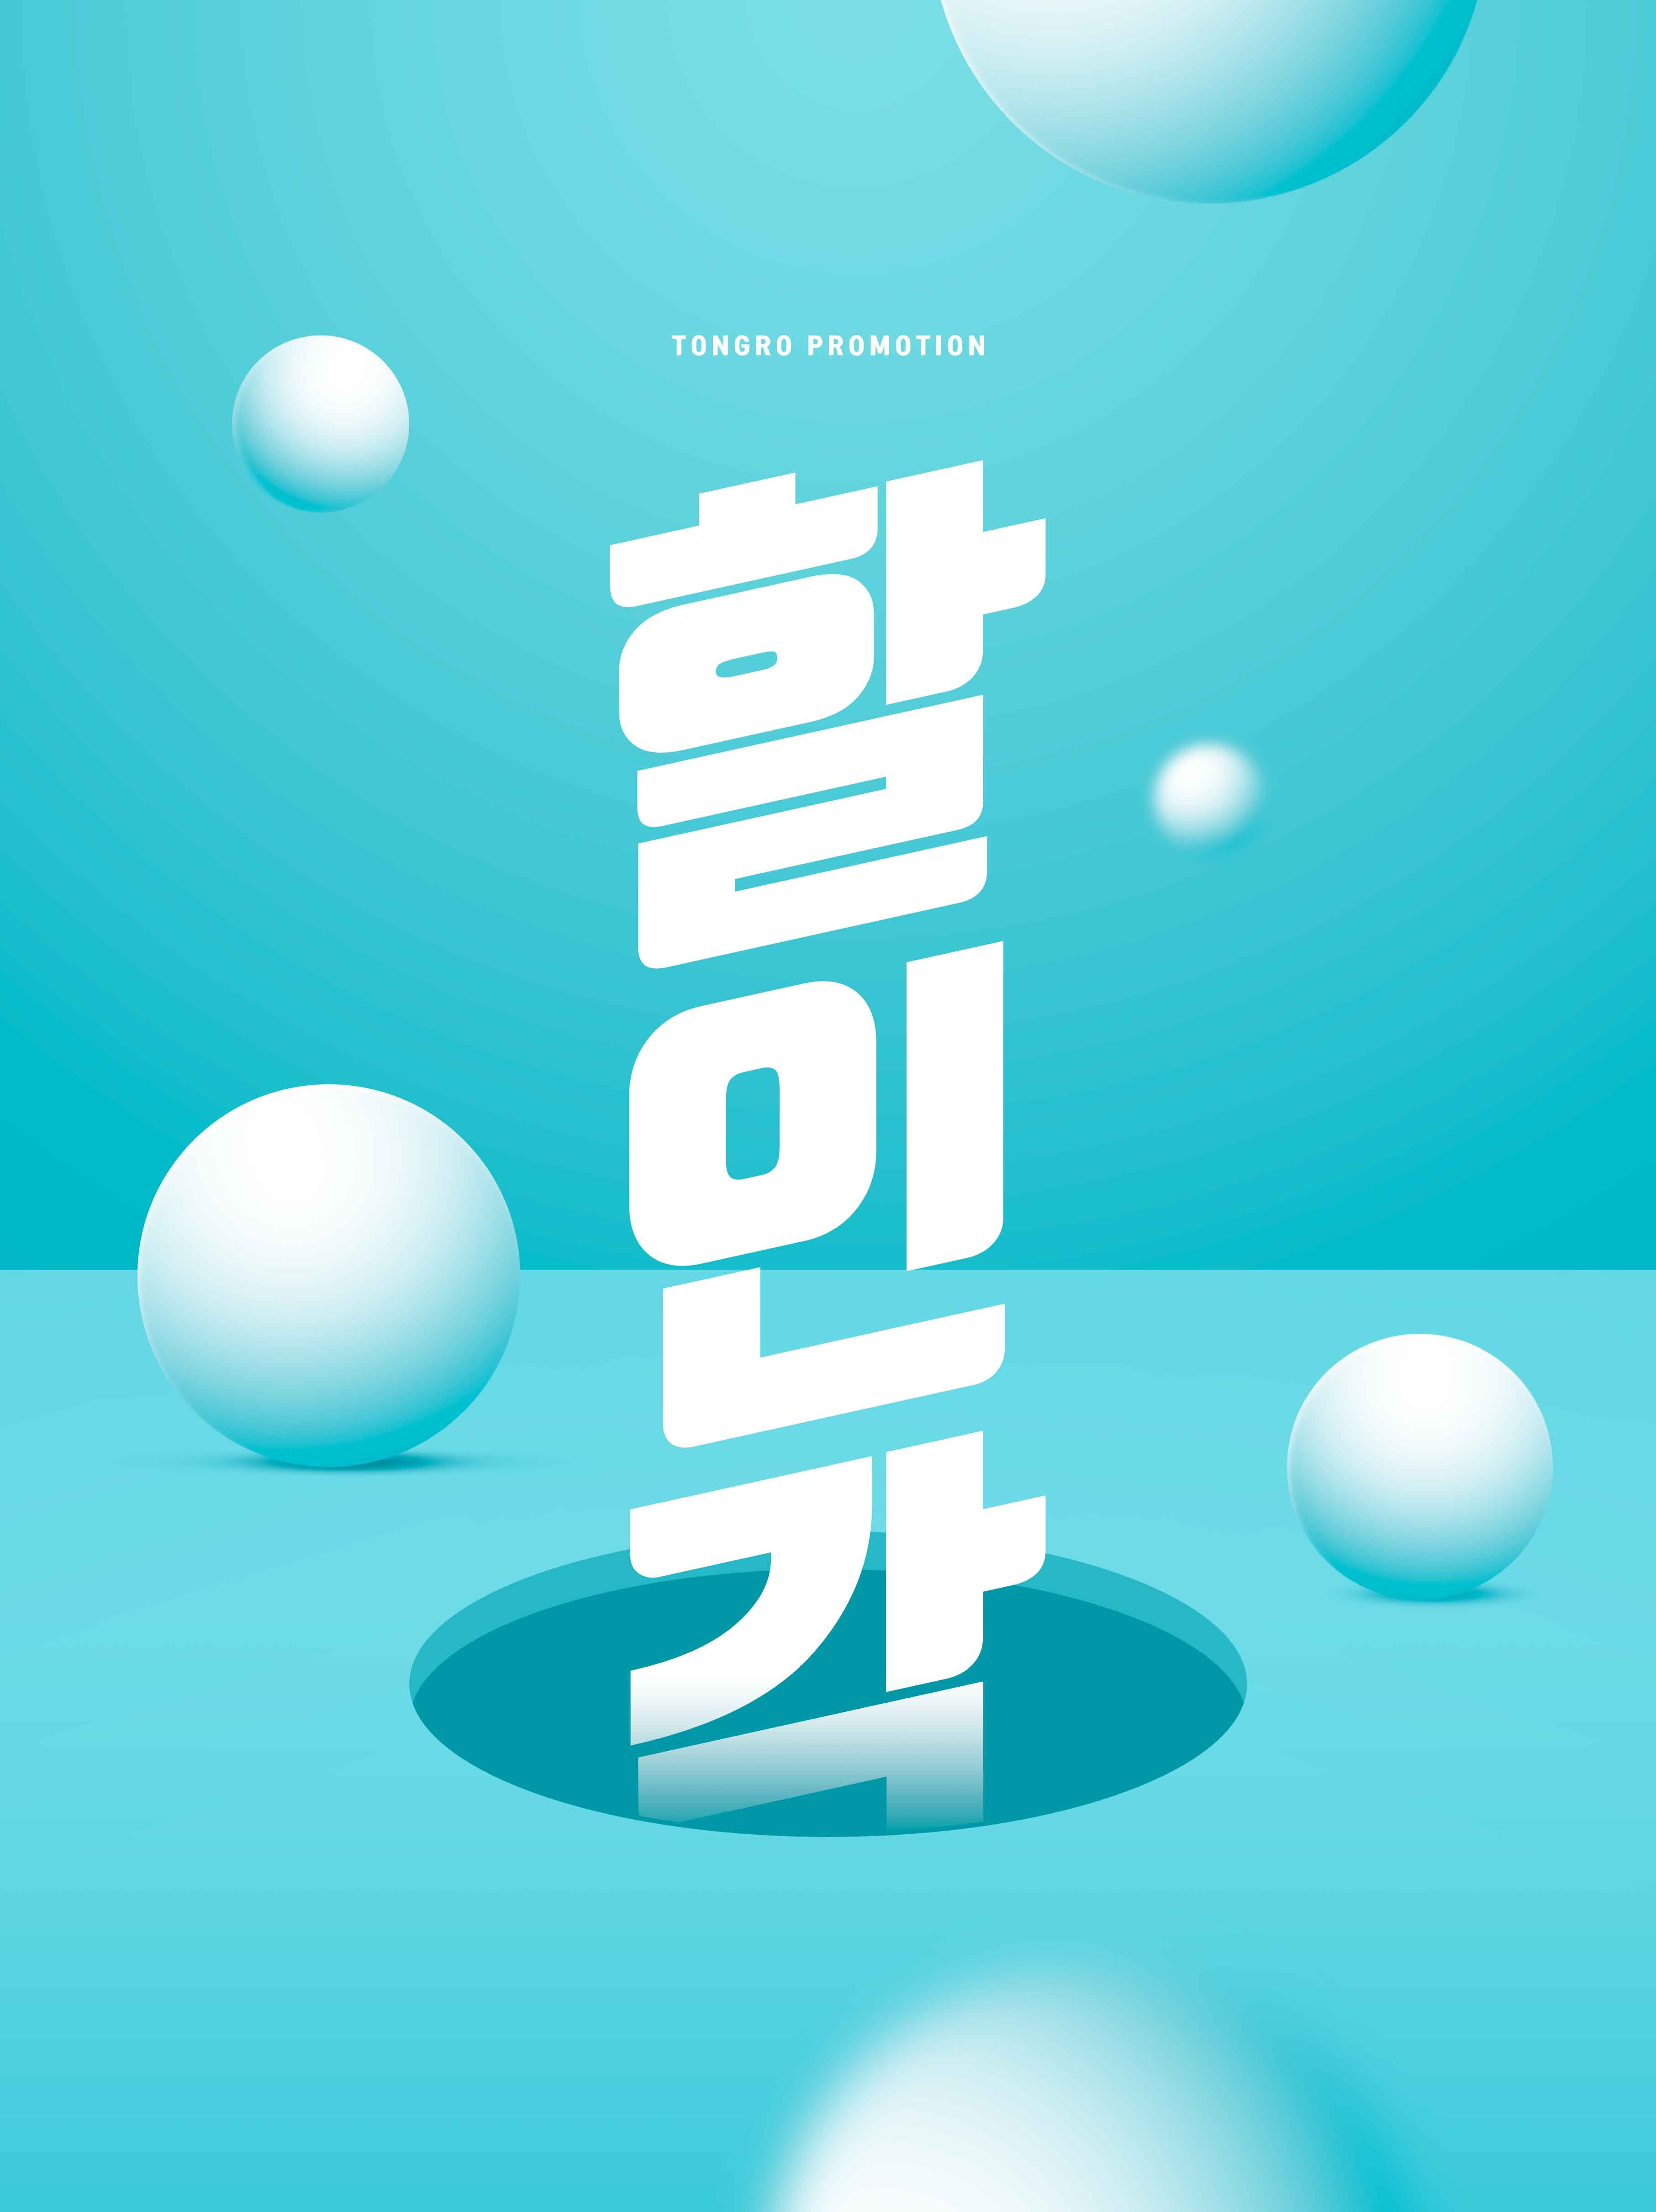 创意几何元素促销海报PSD素材第一素材精选韩国素材合集插图